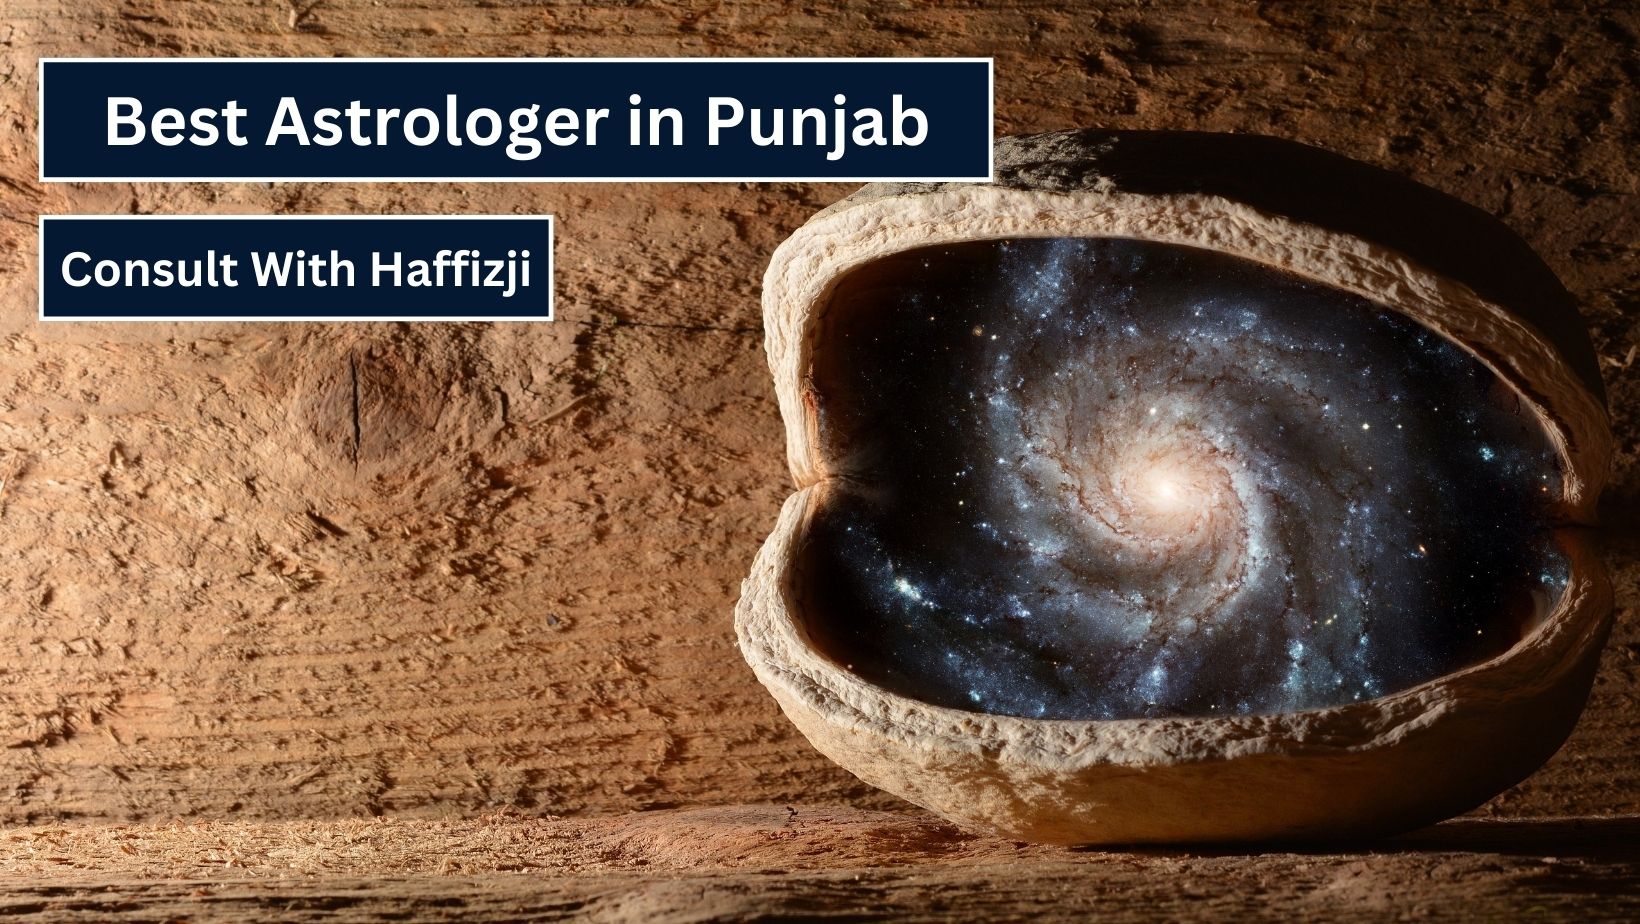 Astrologer in Punjab